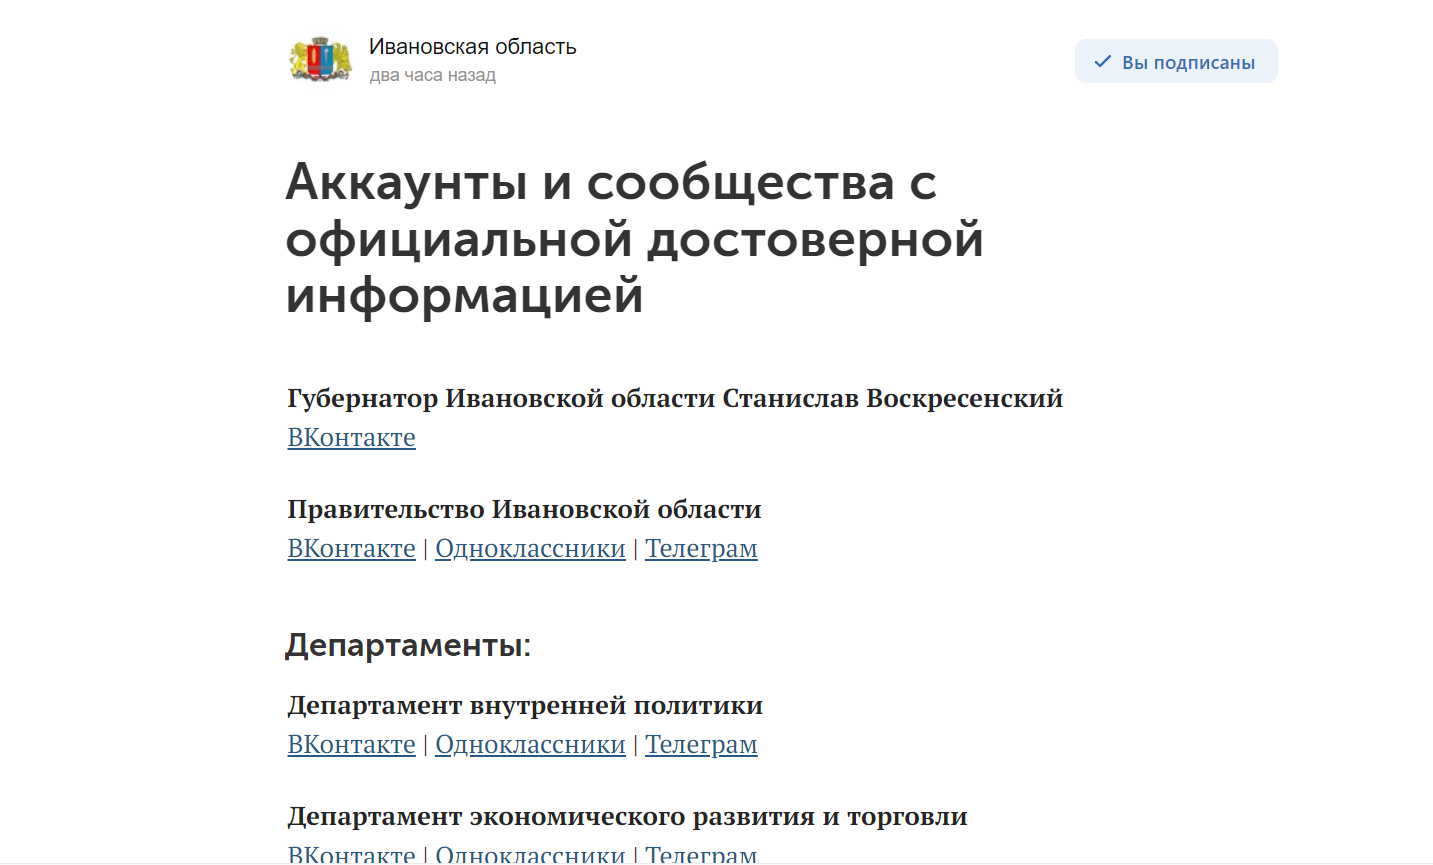 В Ивановской области опубликован список аккаунтов и сообществ с официальной информацией